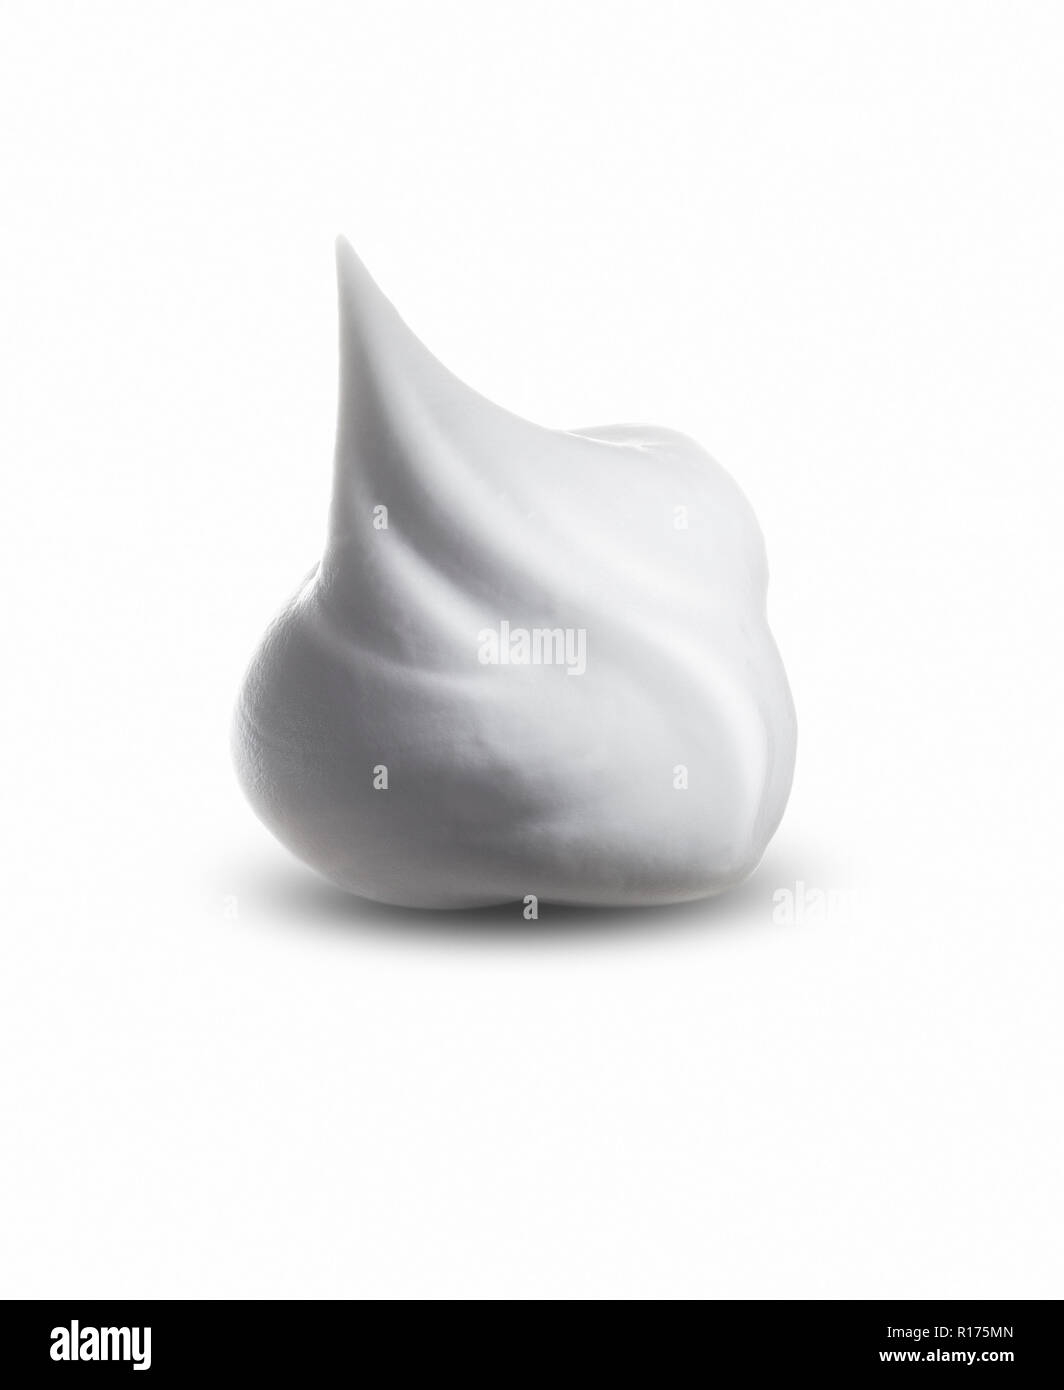 Mound of shaving cream on white background Stock Photo